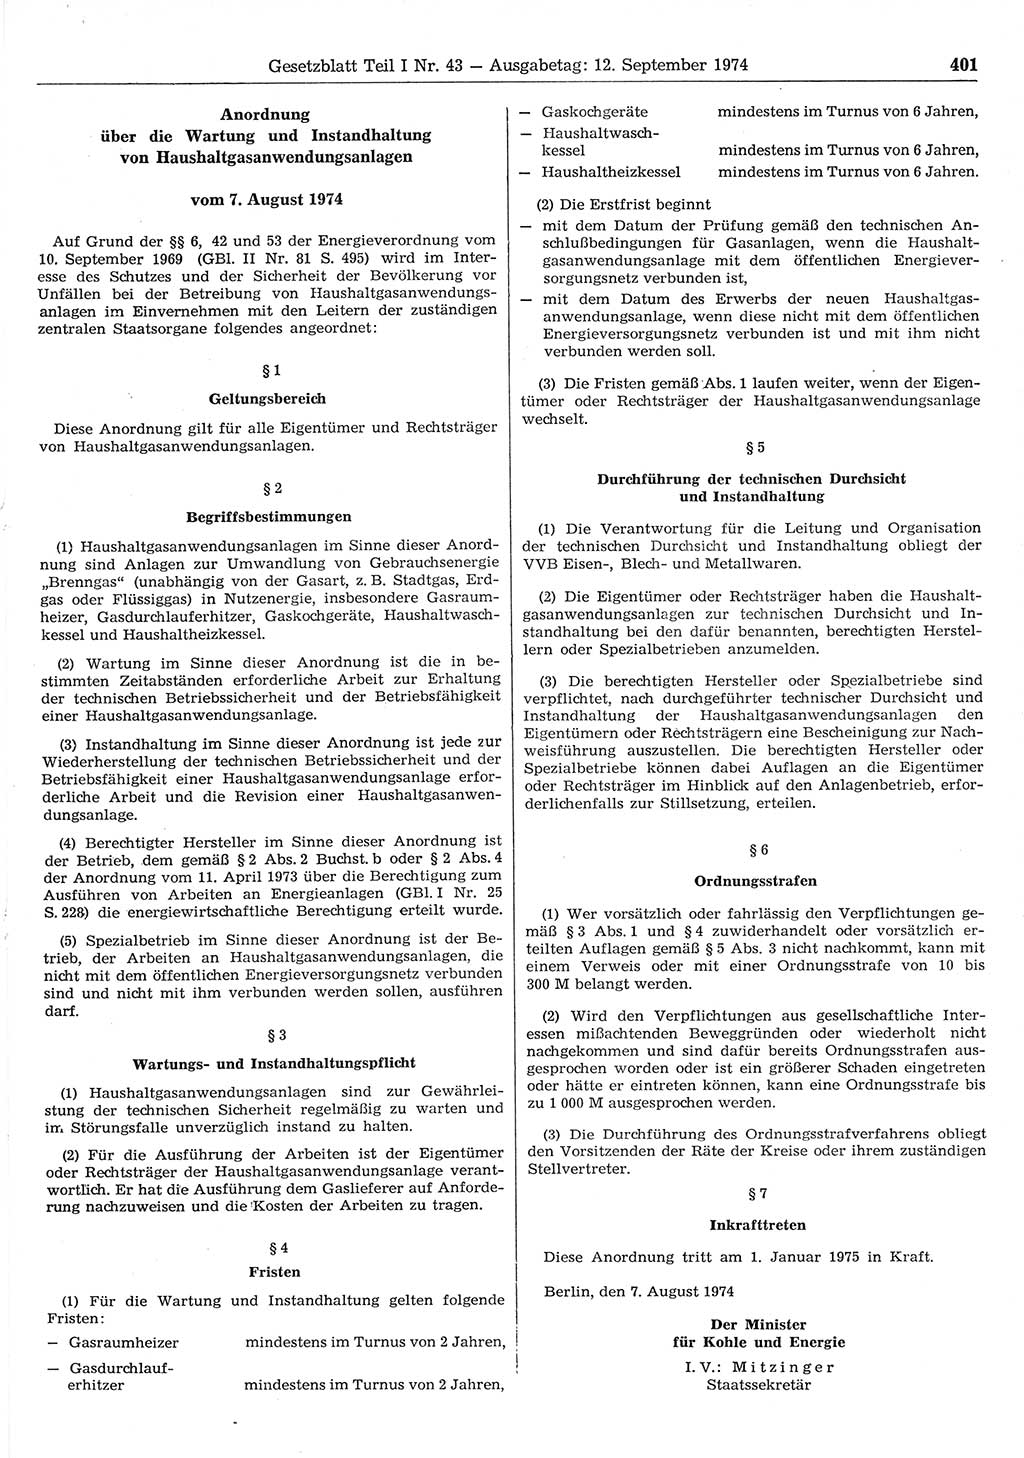 Gesetzblatt (GBl.) der Deutschen Demokratischen Republik (DDR) Teil Ⅰ 1974, Seite 401 (GBl. DDR Ⅰ 1974, S. 401)